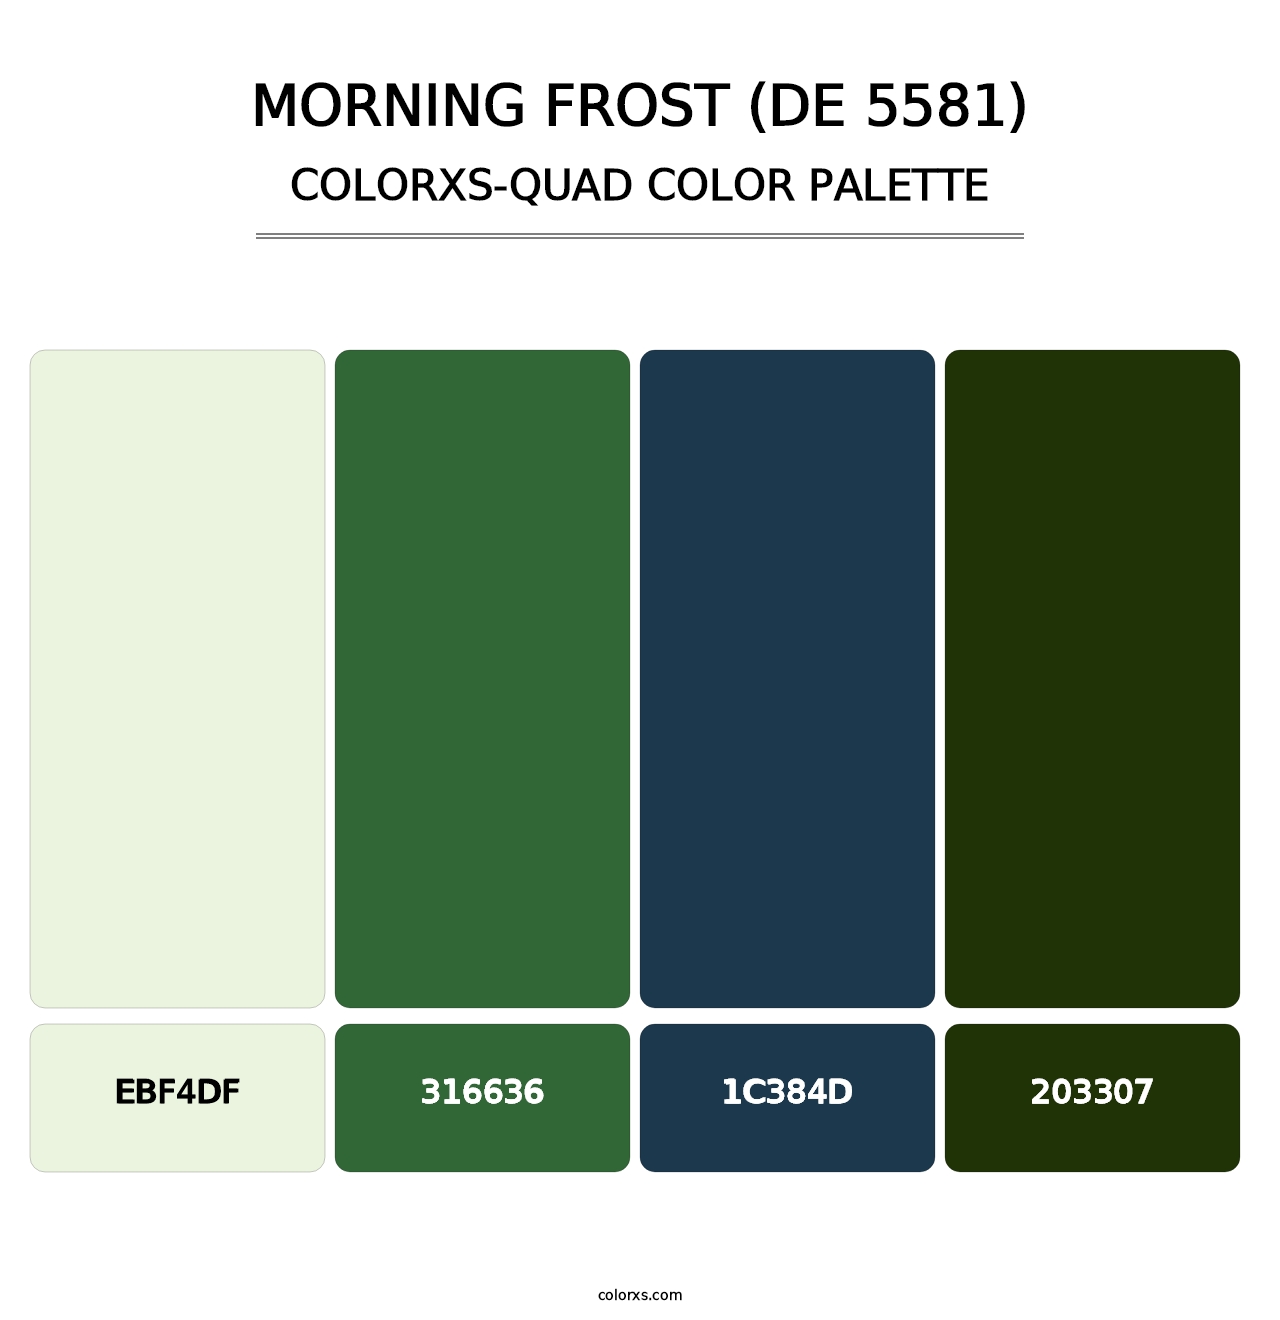 Morning Frost (DE 5581) - Colorxs Quad Palette